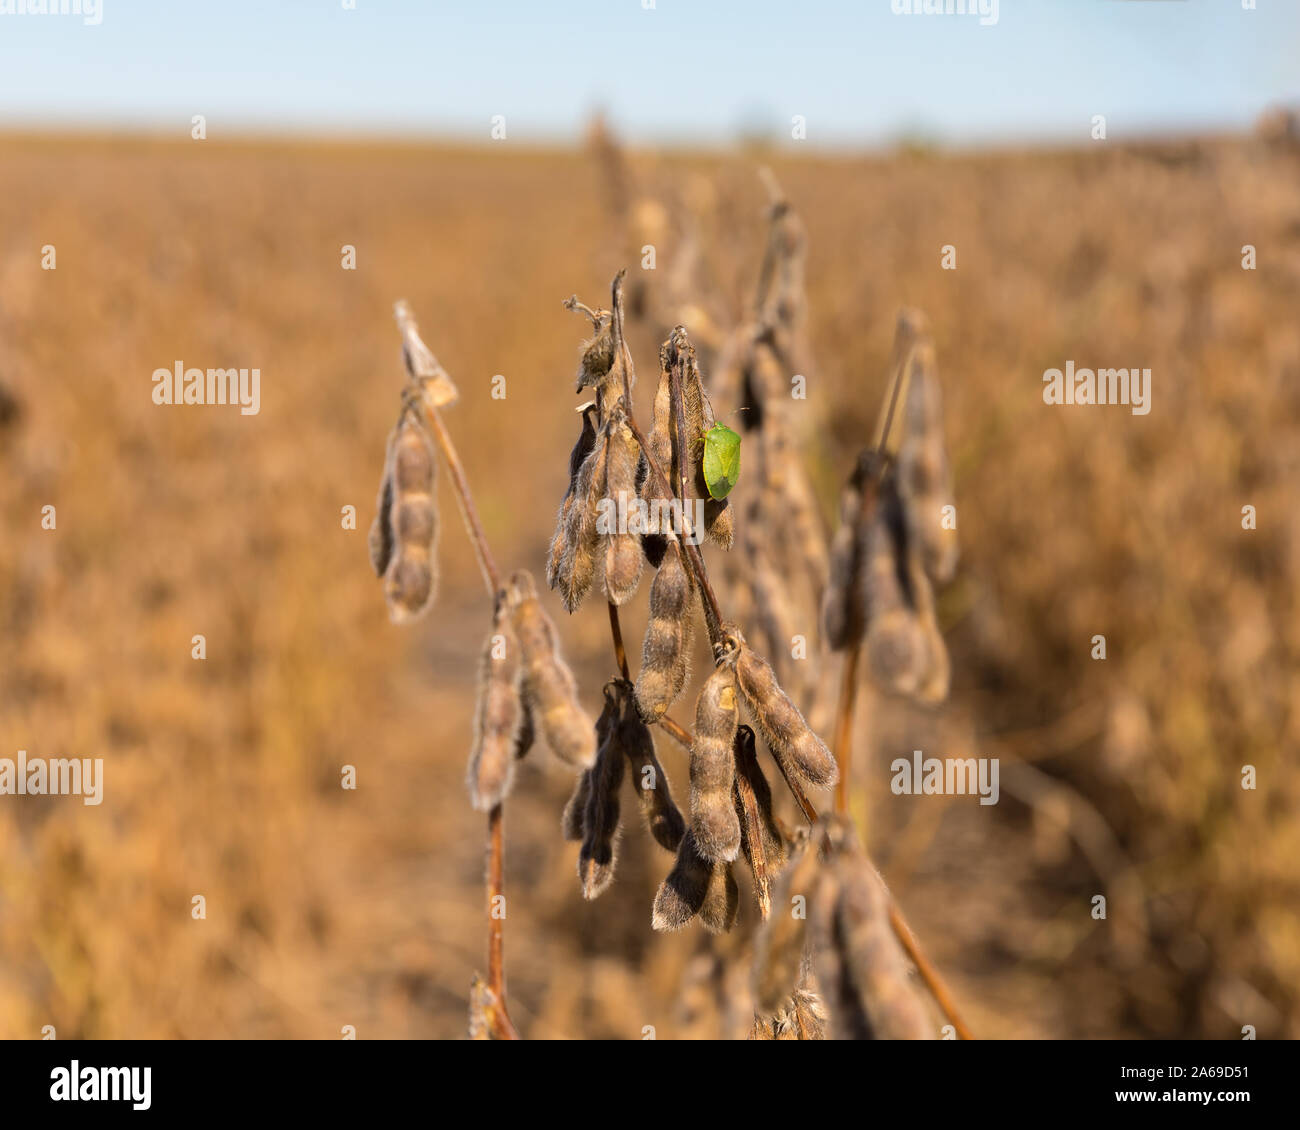 Südliche Grün stinken Bug auf reife Golden Brown pod von Soja Pflanze im Feld zu Beginn der Erntezeit im Mittelwesten. Sonnige Herbst Tag. Stockfoto